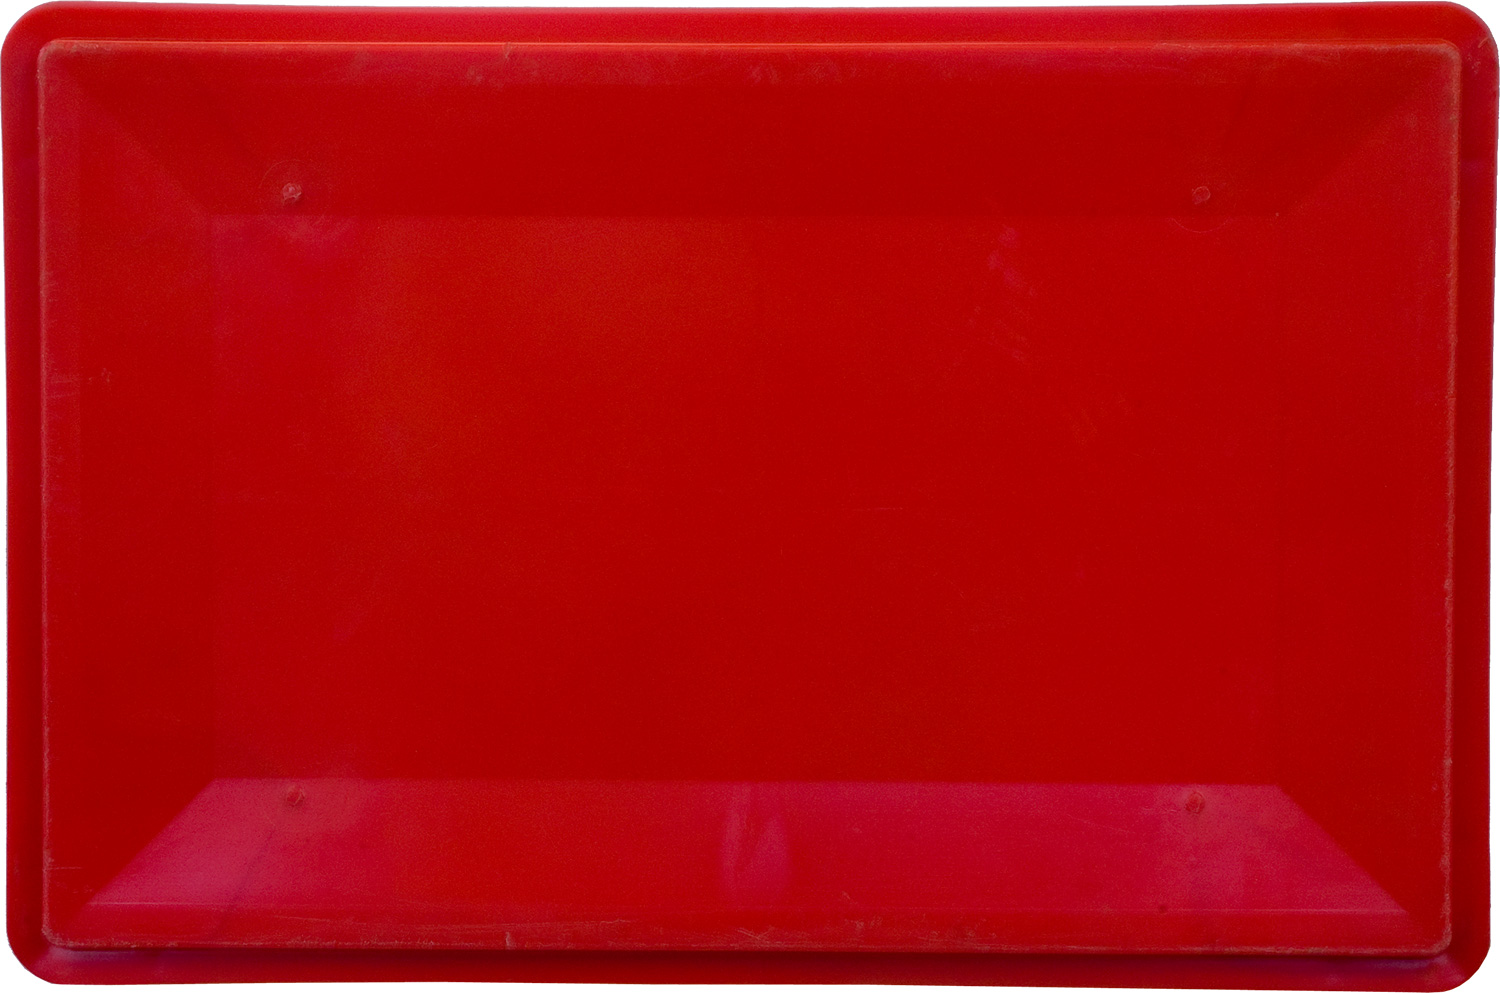 Ящик пищевой мясной 210 размером 600х400х300 мм сплошной Е3 красный евроформат